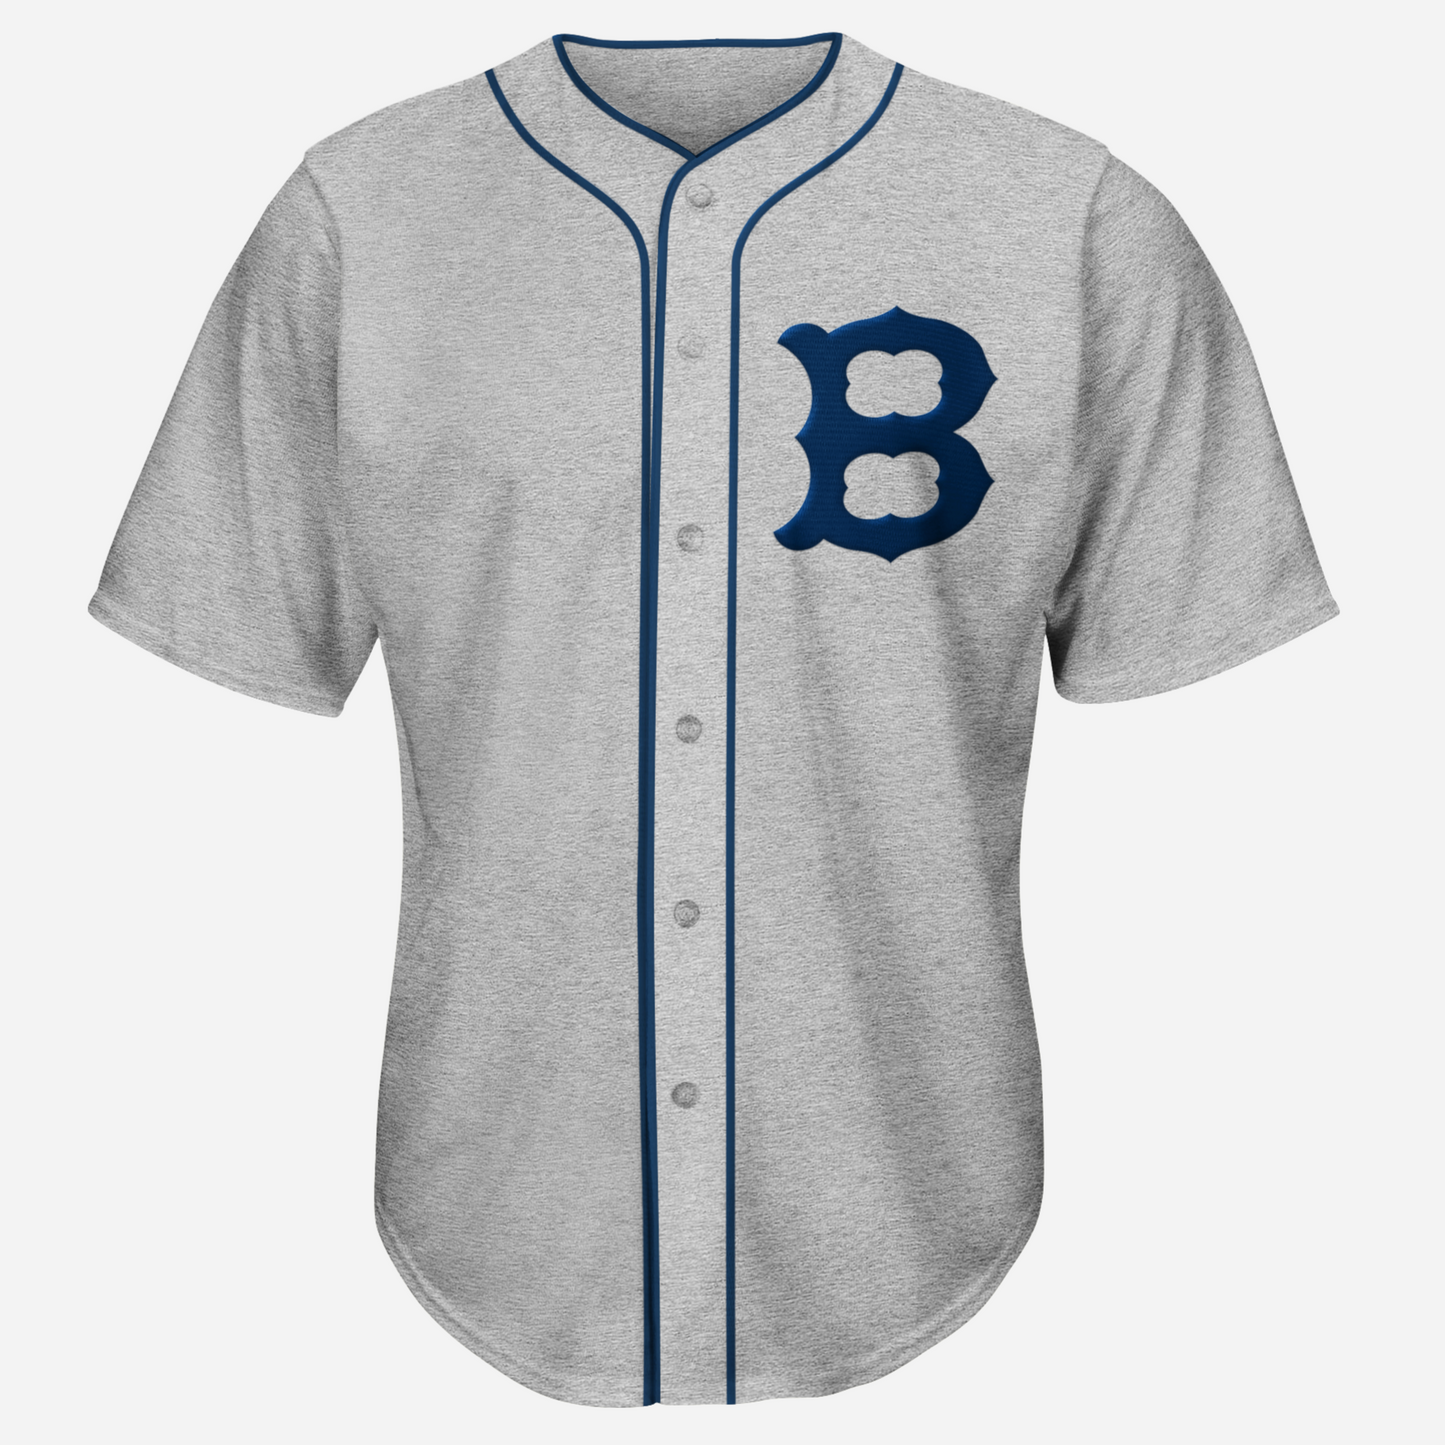 Classic B Baseball Jersey